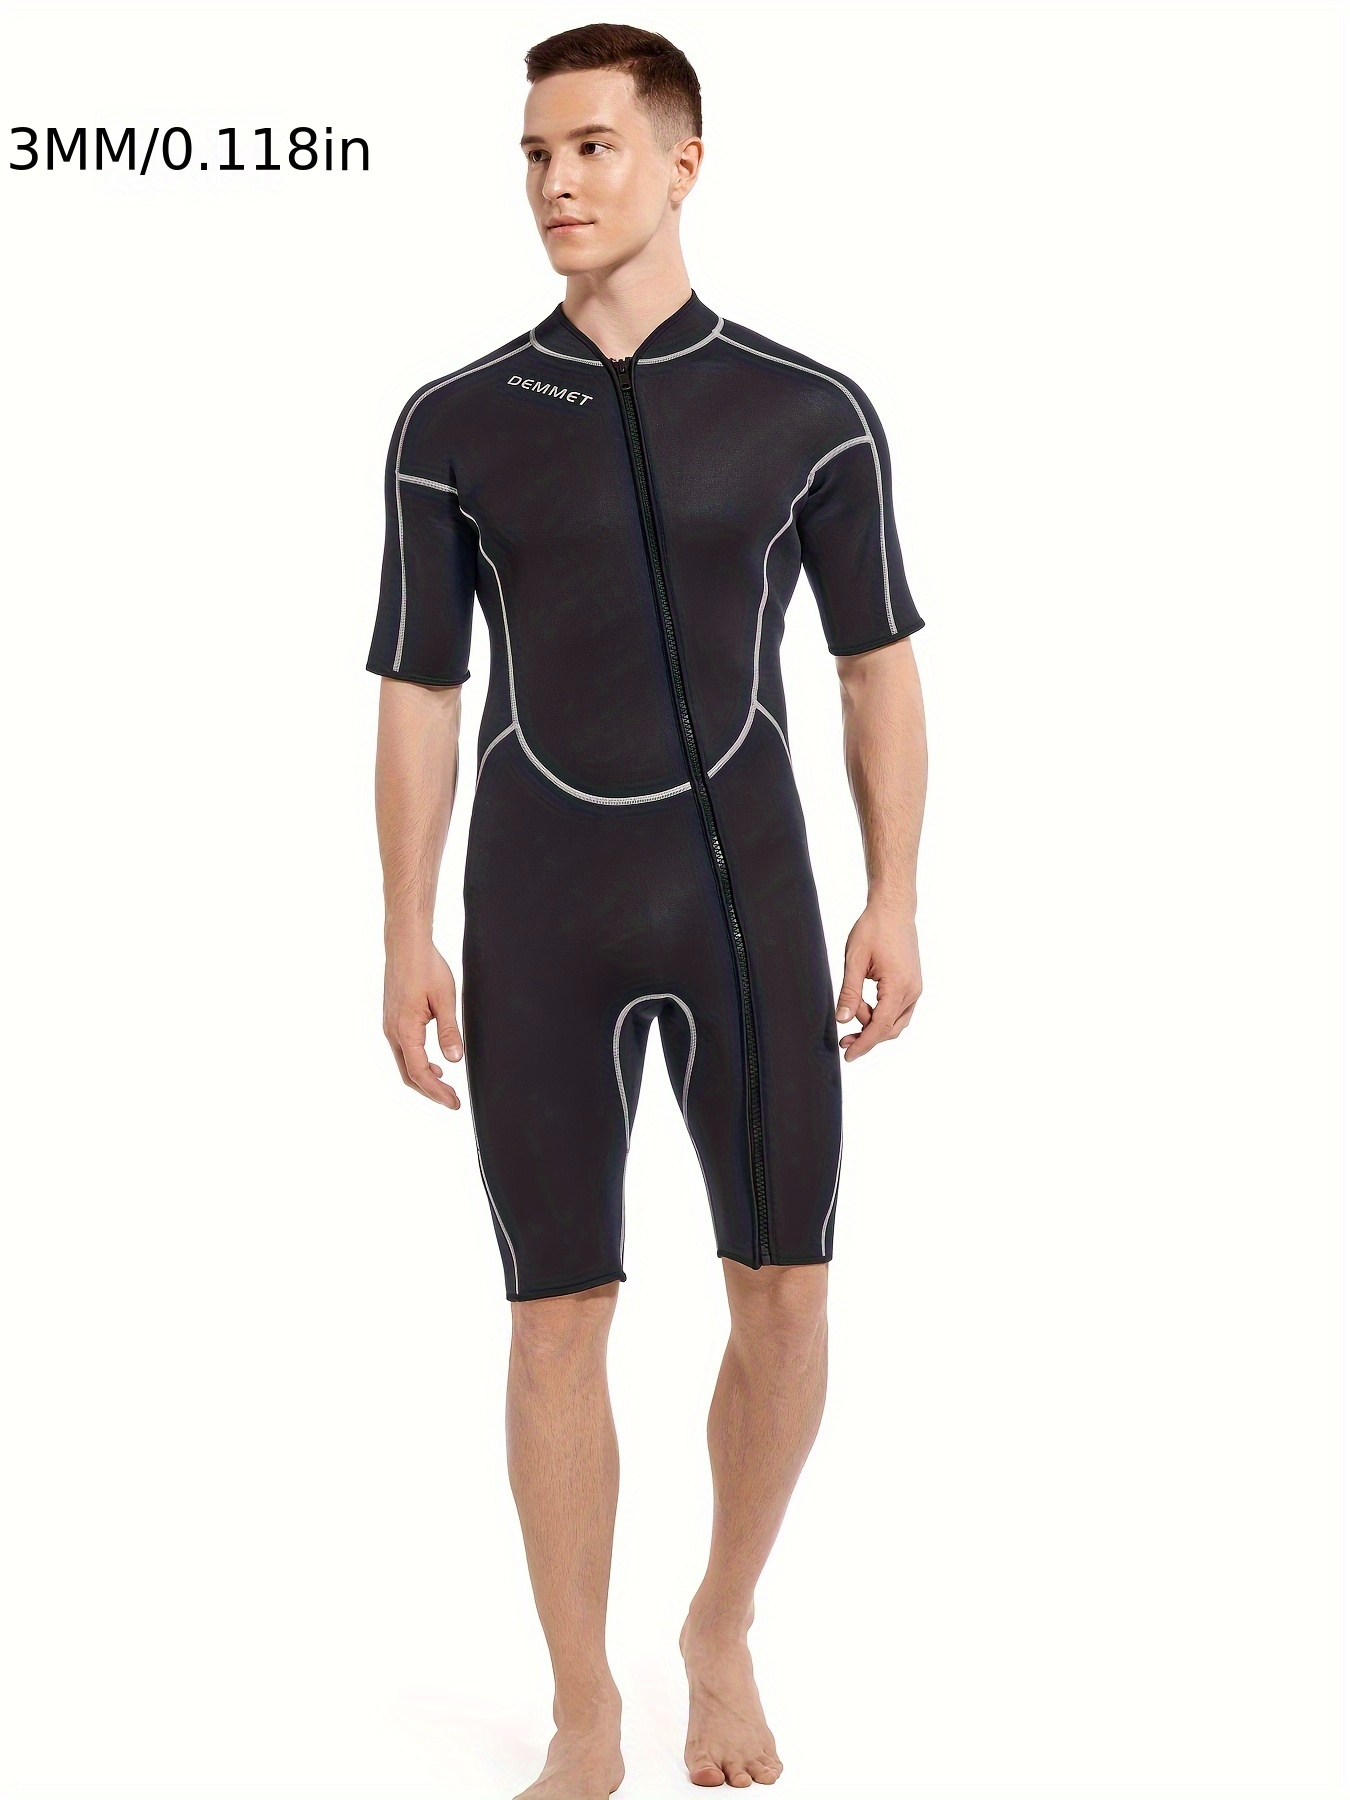 Traje de neopreno corto de 0.118 in (3 mm) para hombre, de cuerpo entero  con cremallera frontal que sirve como traje de buceo, para practicar  snorkel